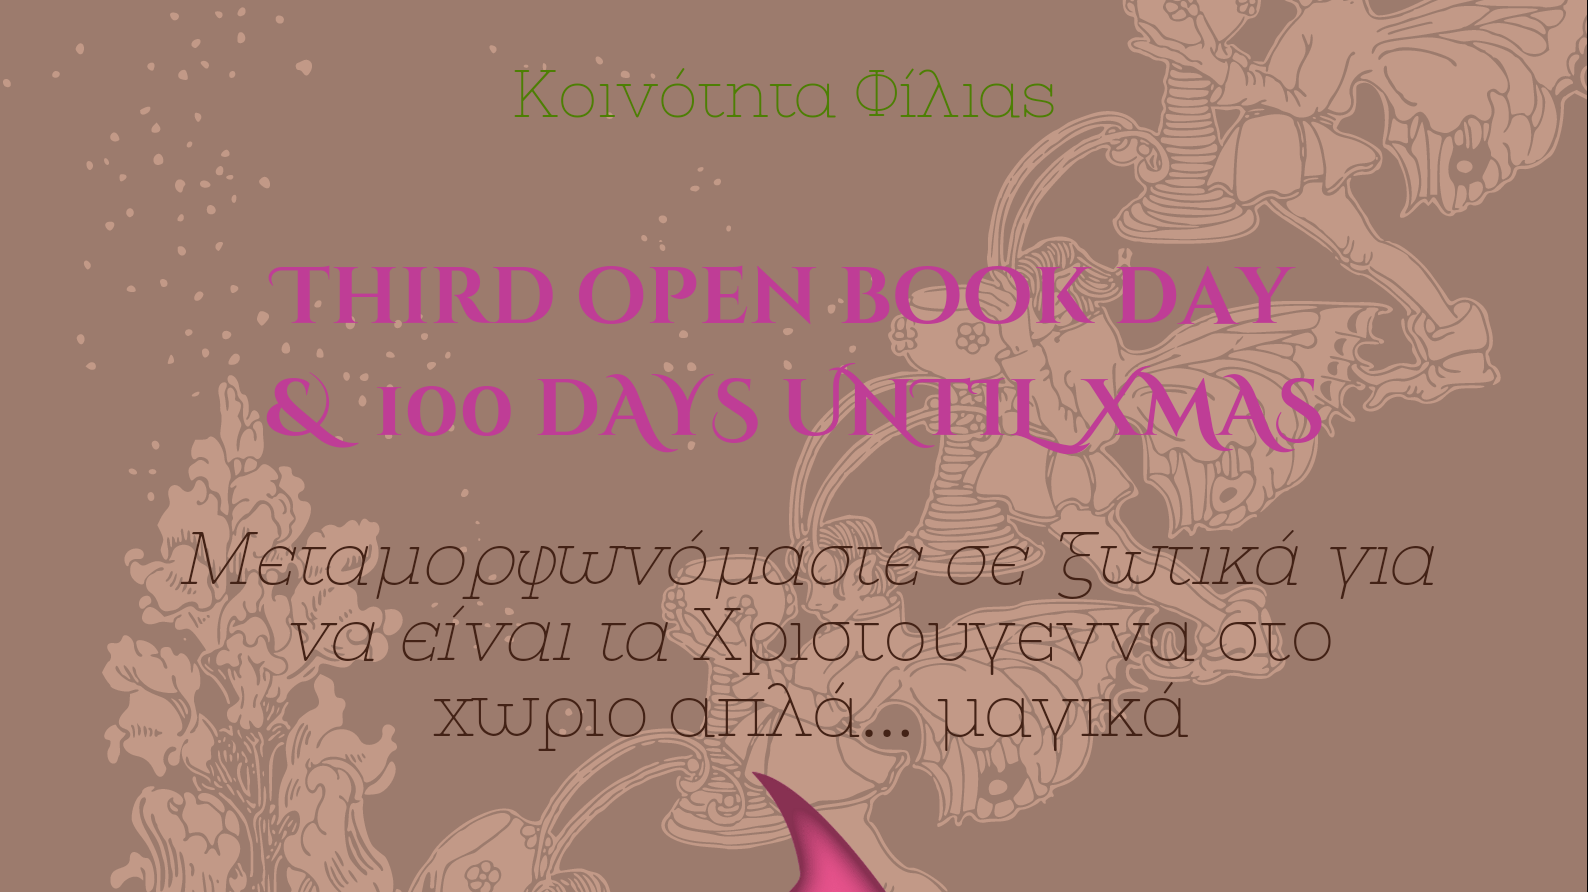 «Third Open book day & 100 days until Χmas» στη Φίλια